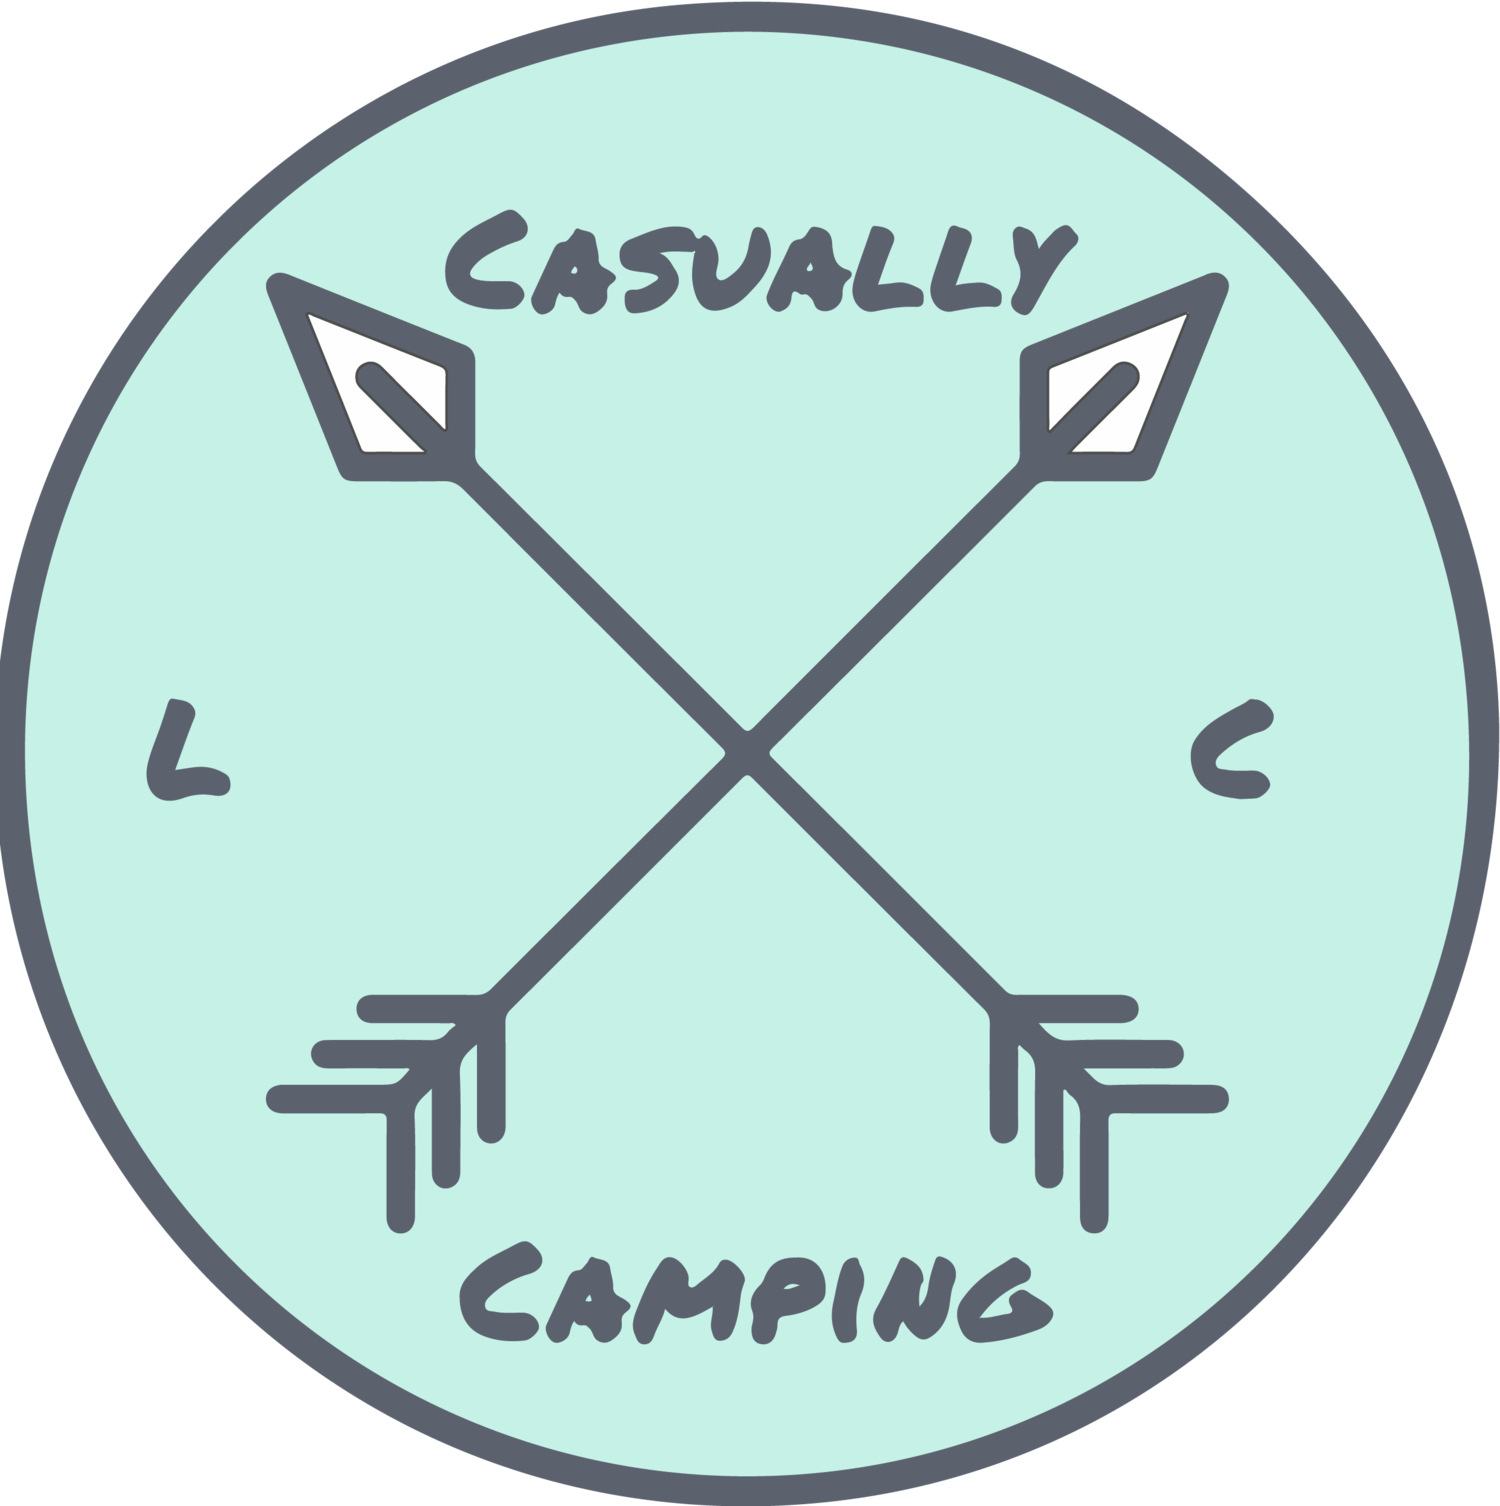 Camping — Casually Camping